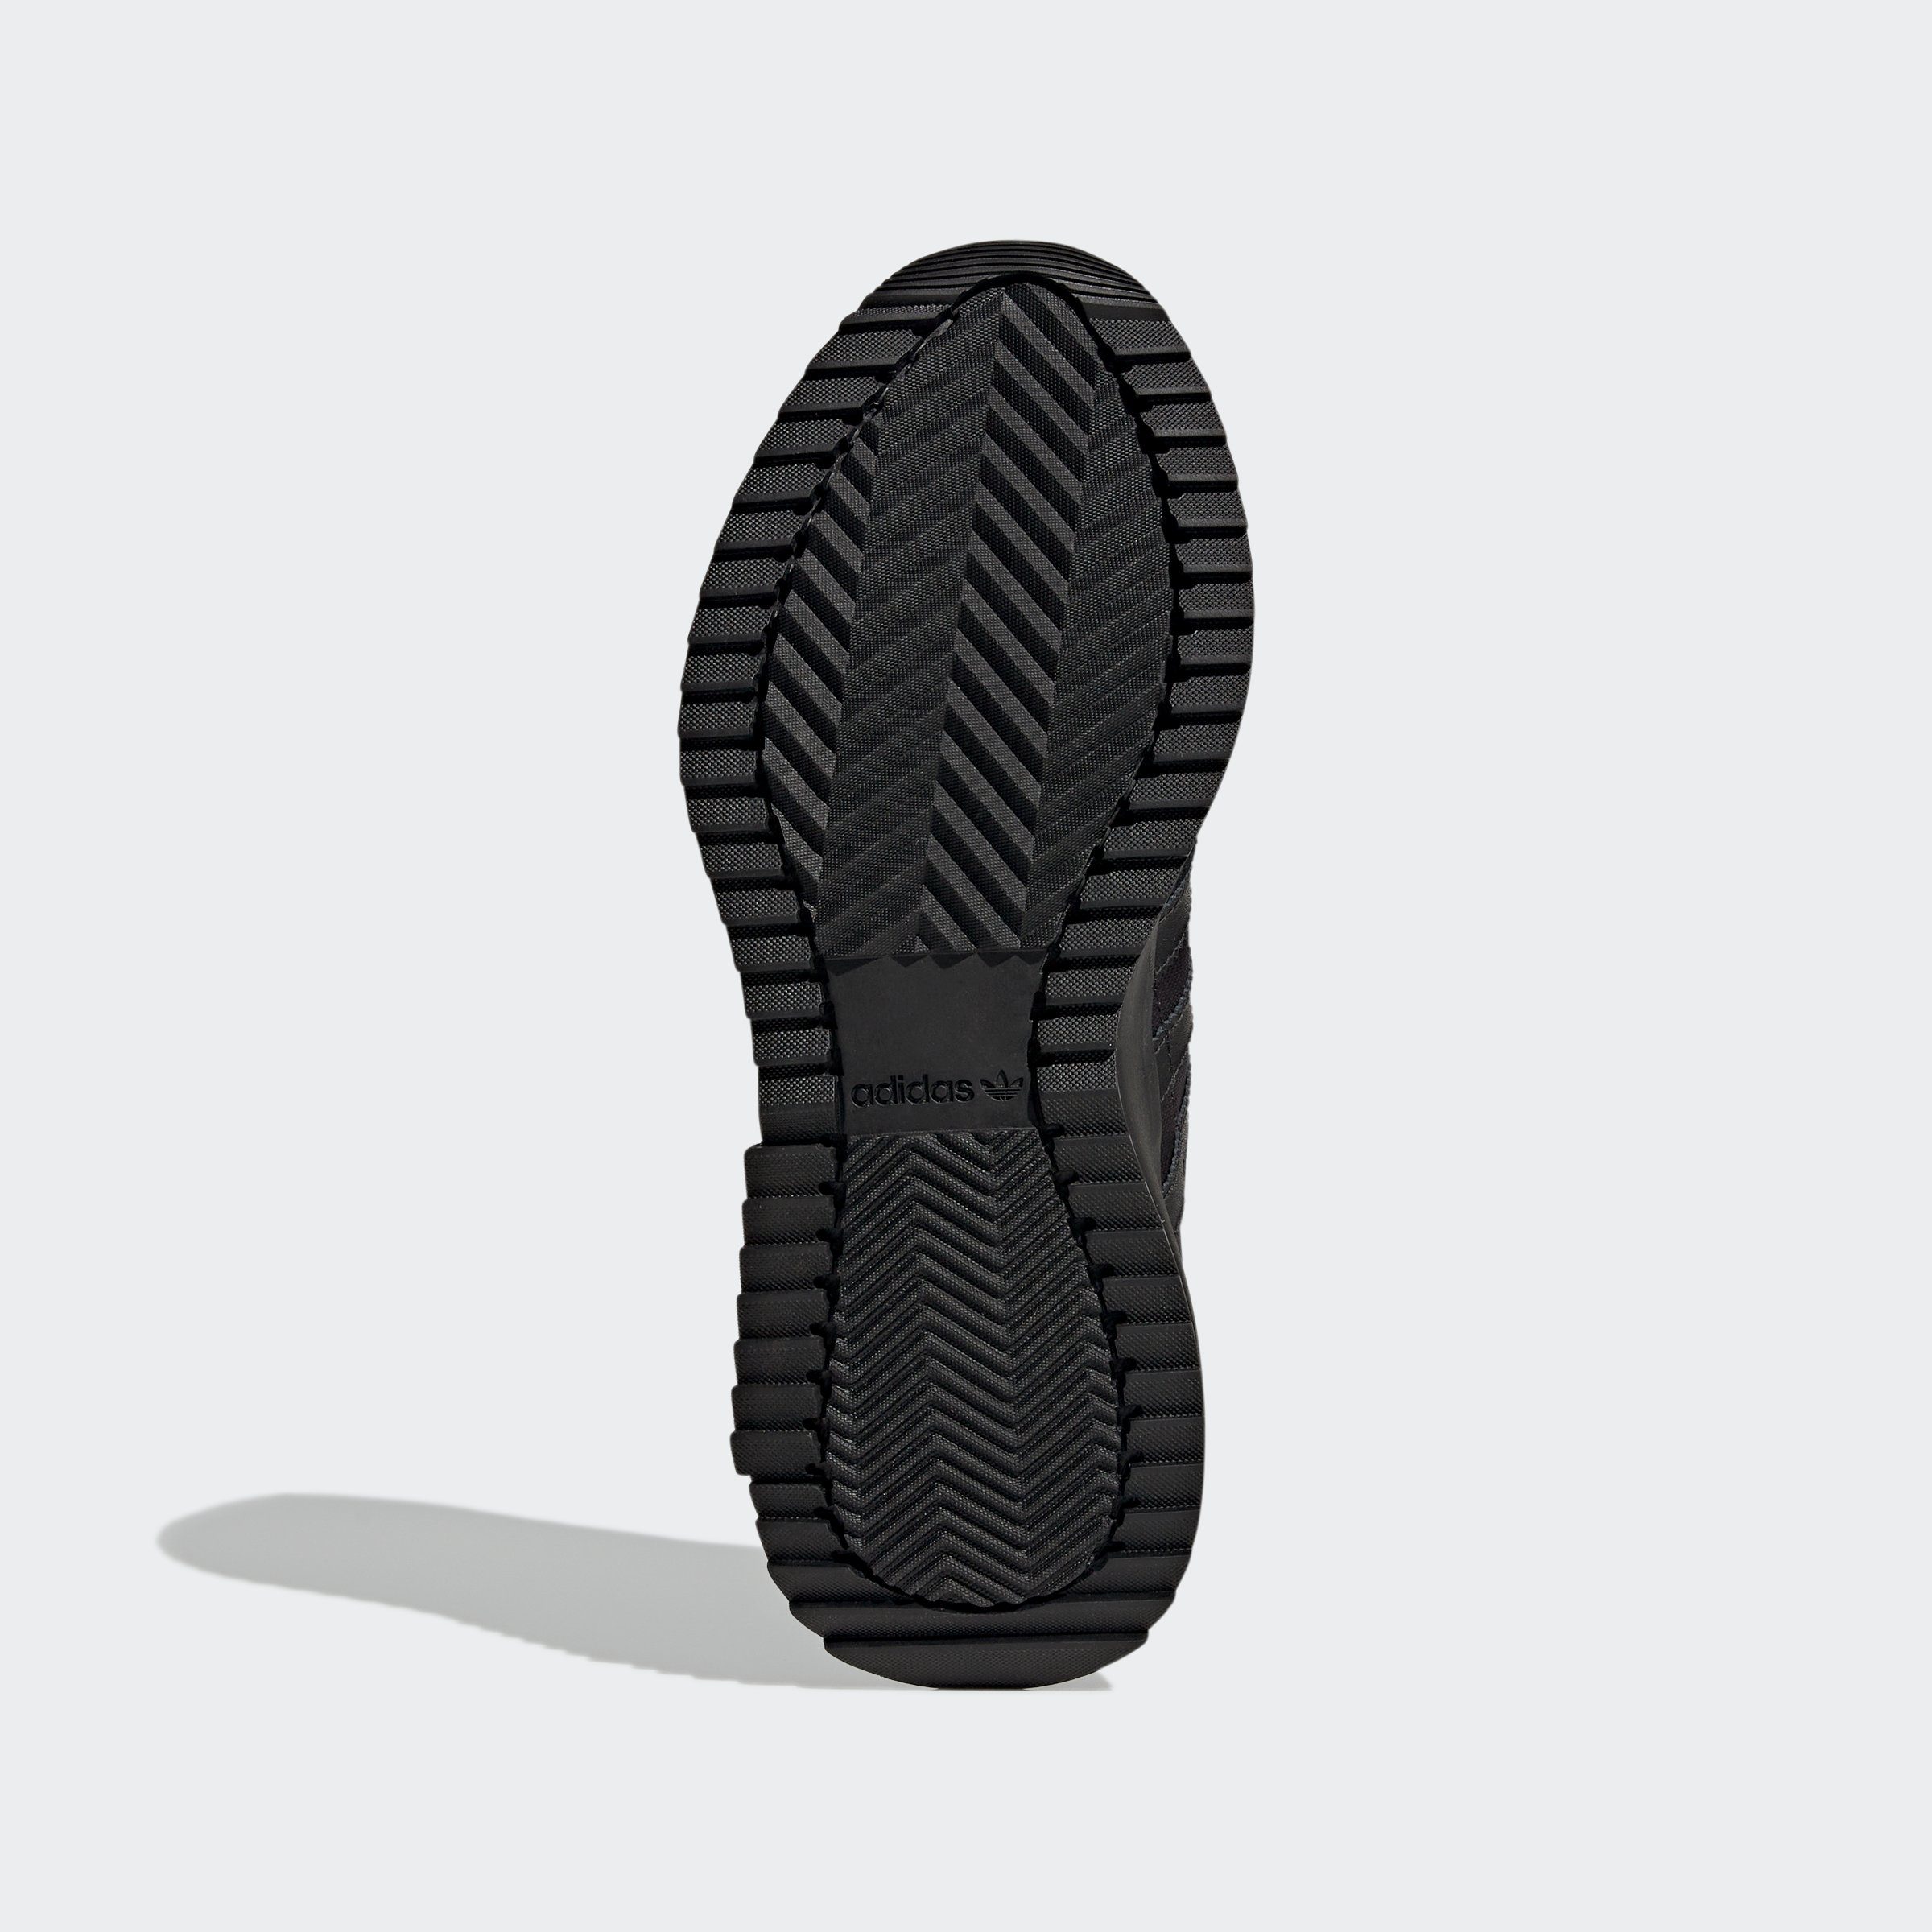 F2 Originals adidas schwarz Sneaker RETROPY